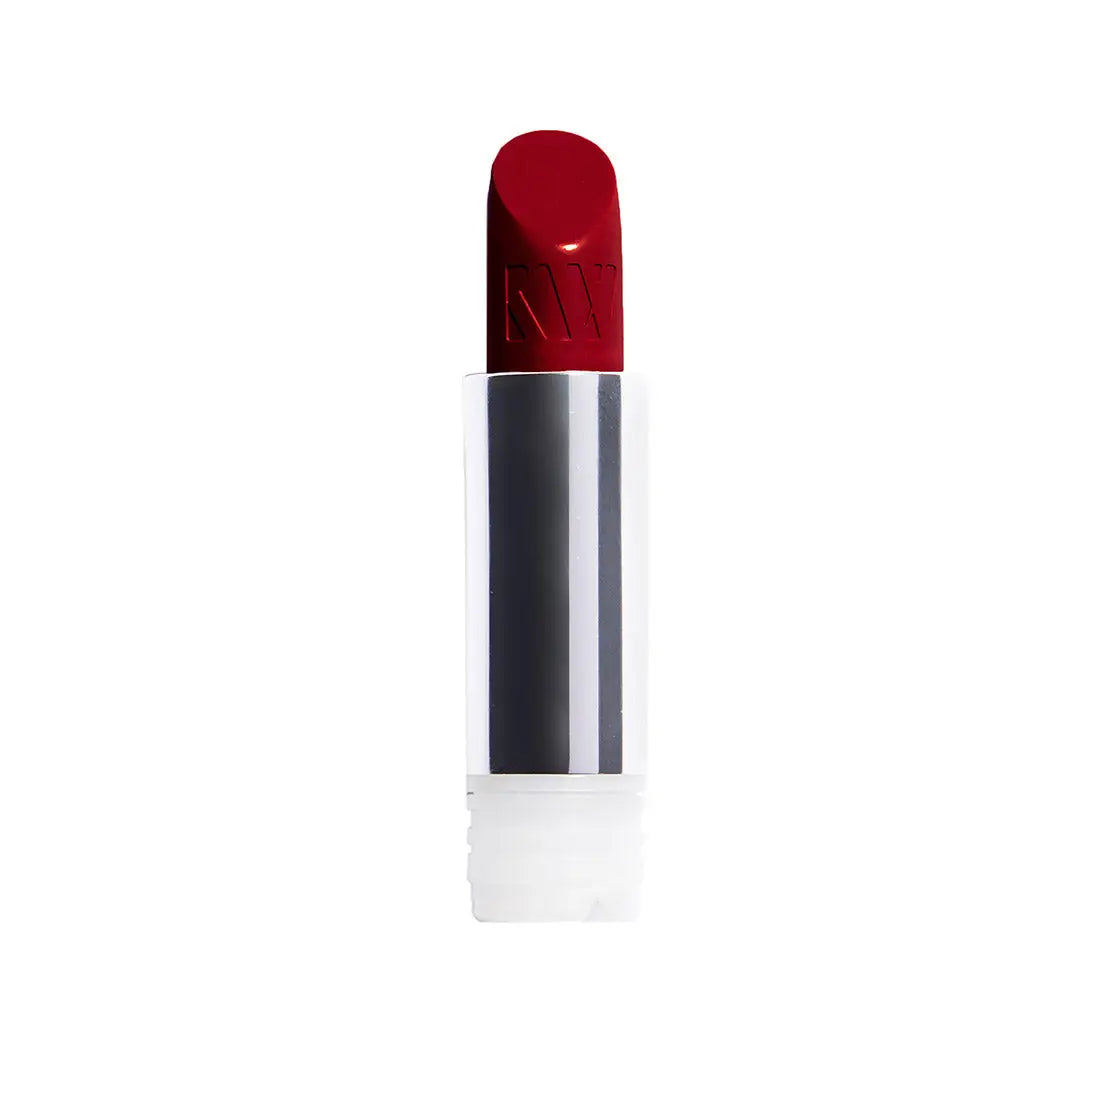 Kjaer Weis Lipstick Refill - Adore Free Shipping Worldwide